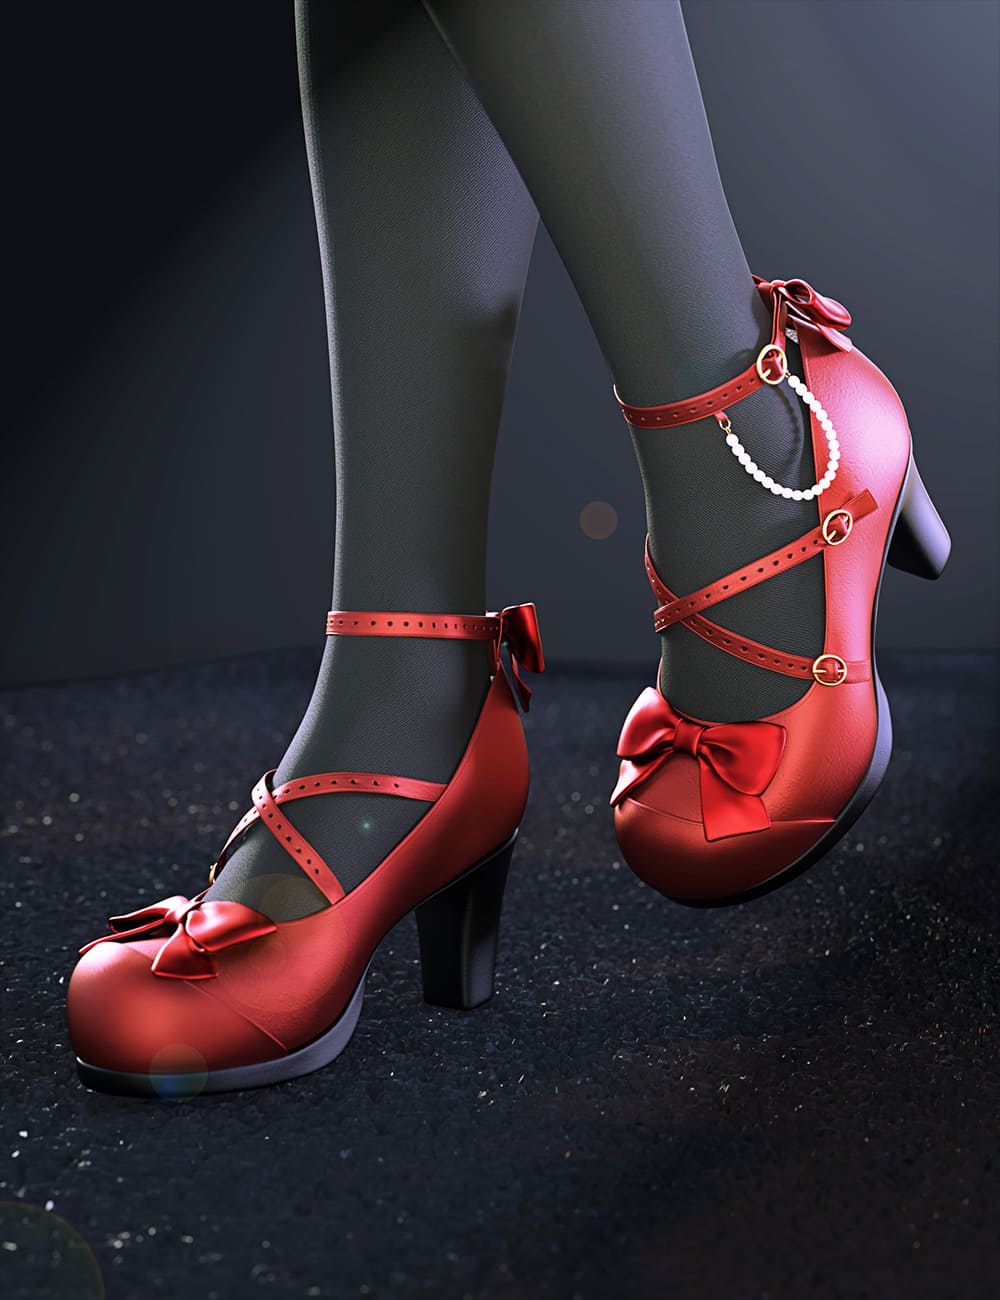 Sue Yee Cute High Heels for Genesis 8 and 8.1 Females_DAZ3D下载站